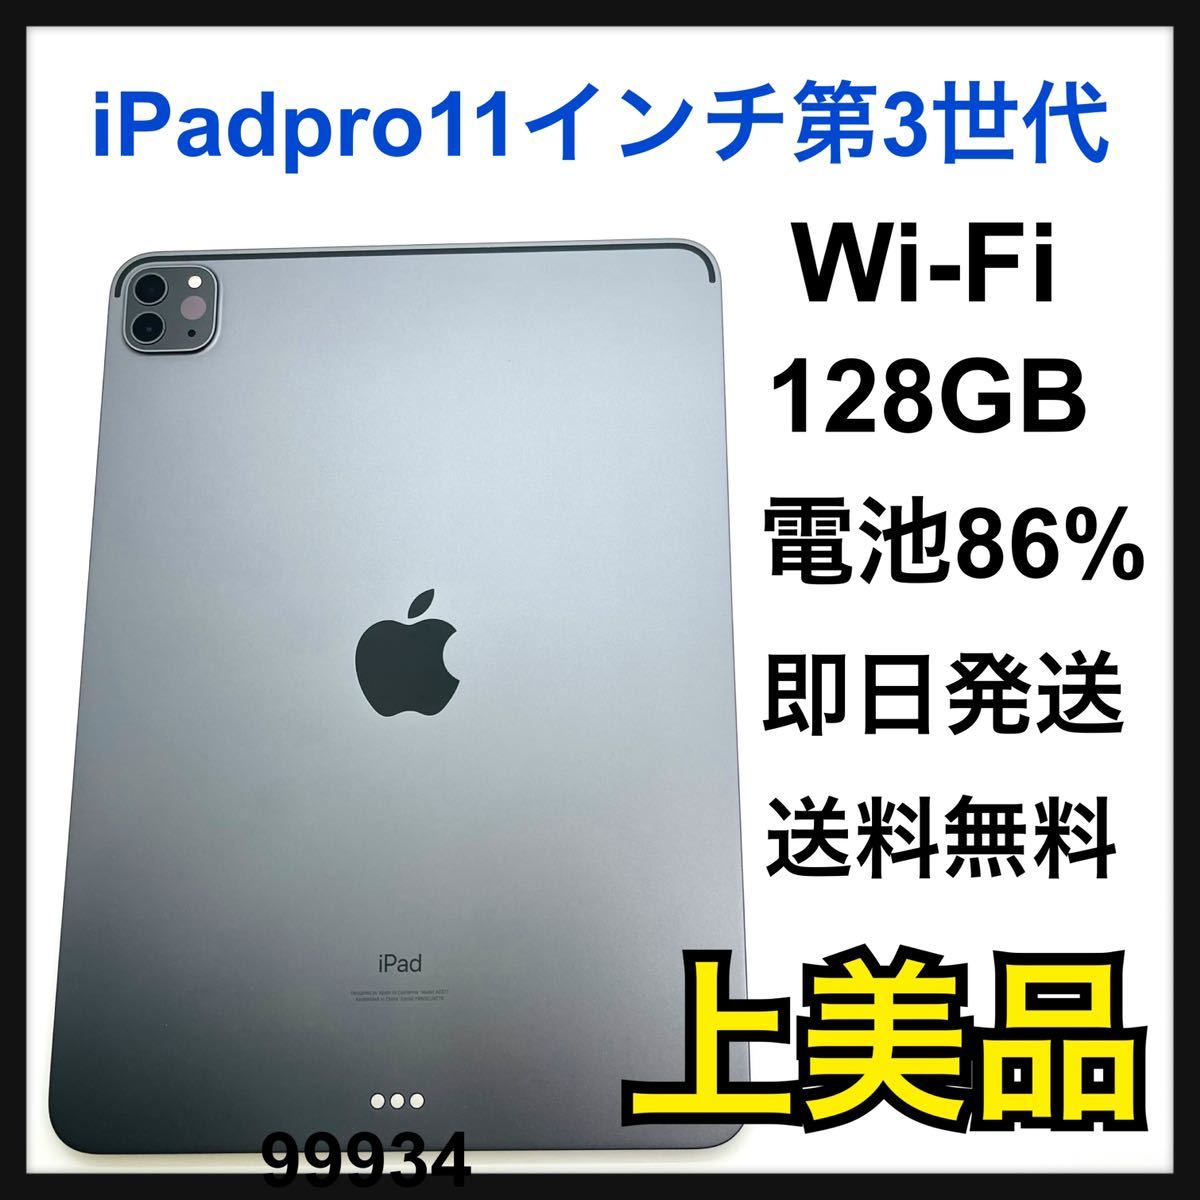 誕生日プレゼント iPad 再CK568 Air スペースグレイ 64GB Wi-Fiモデル